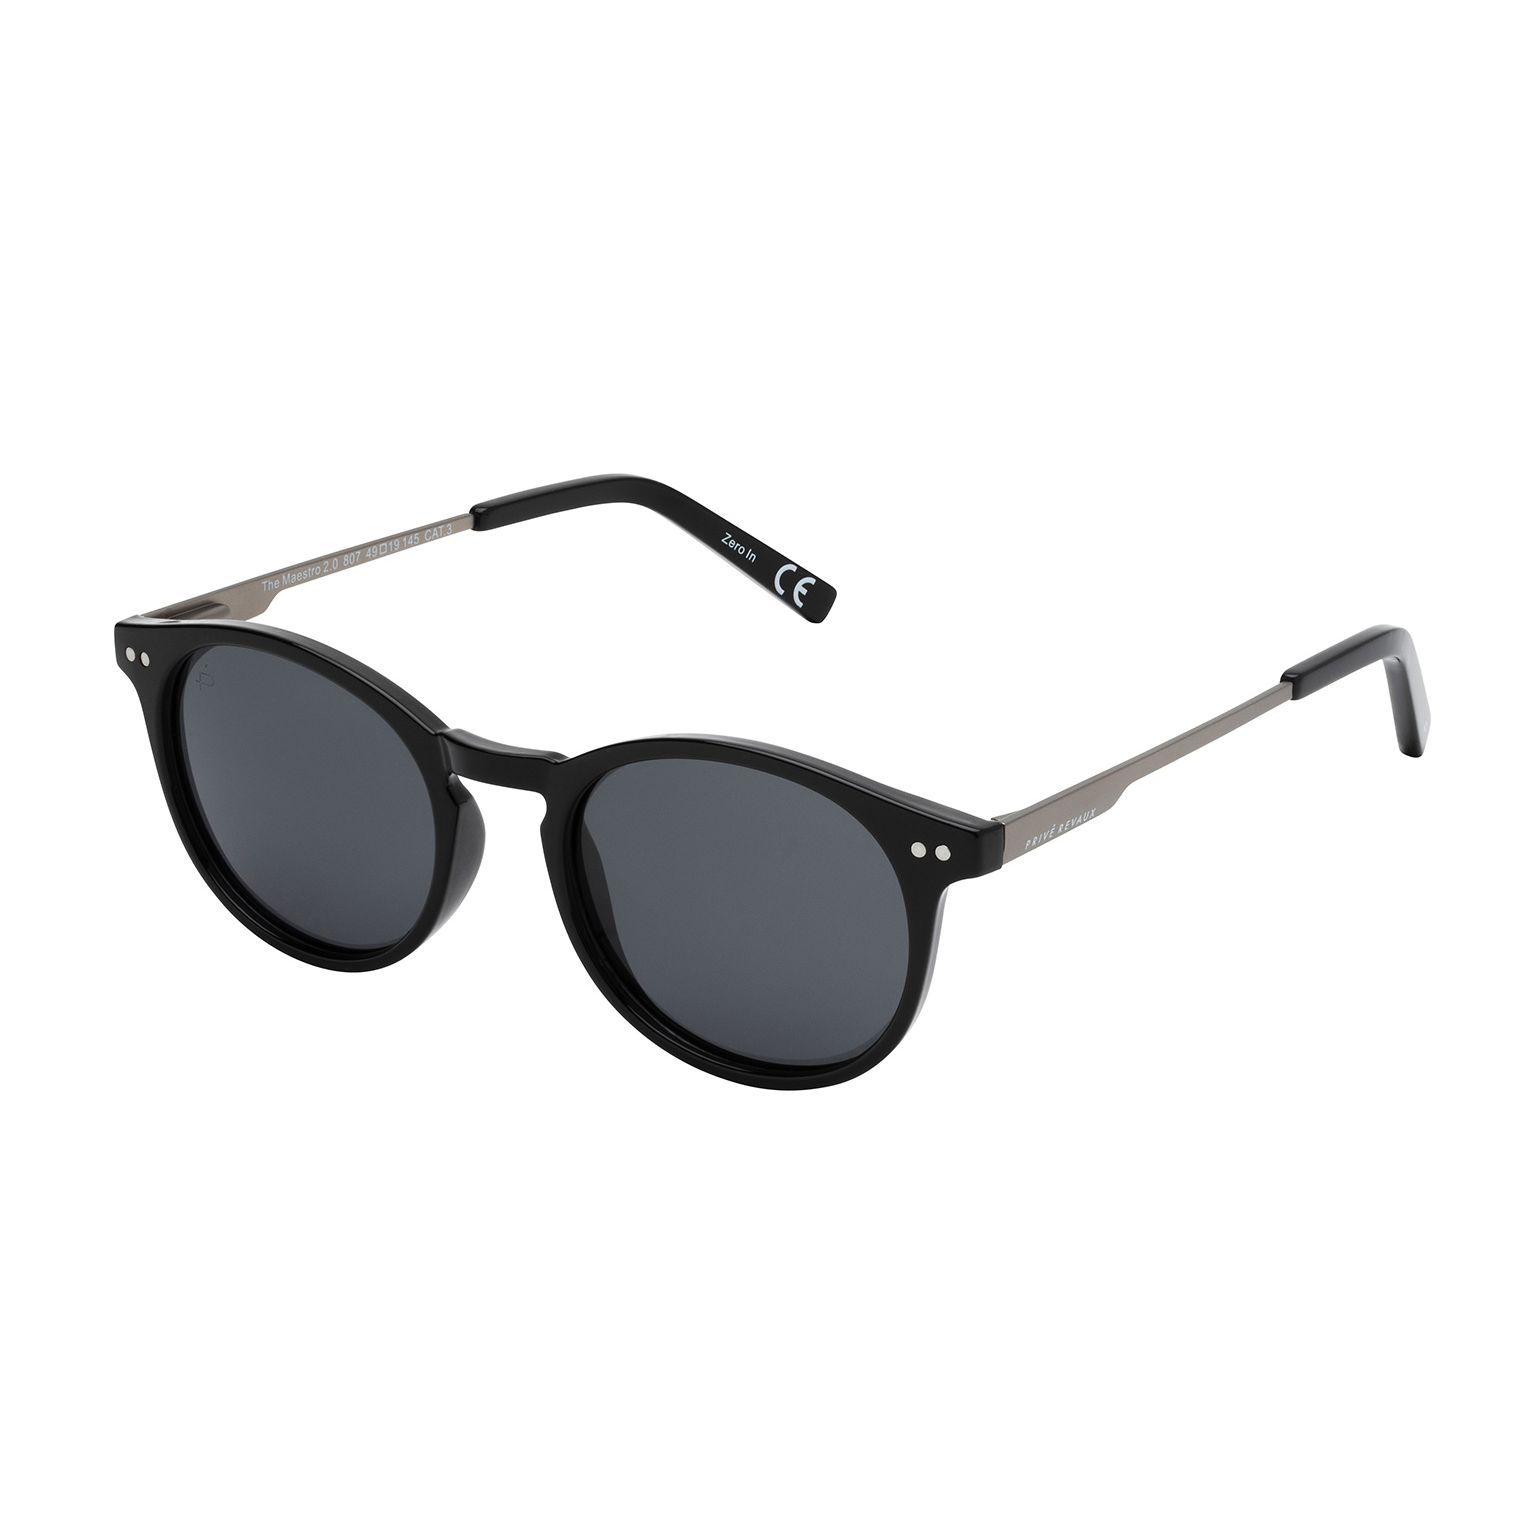 MAESTRO M S Round Sunglasses 807 M9 - size 49